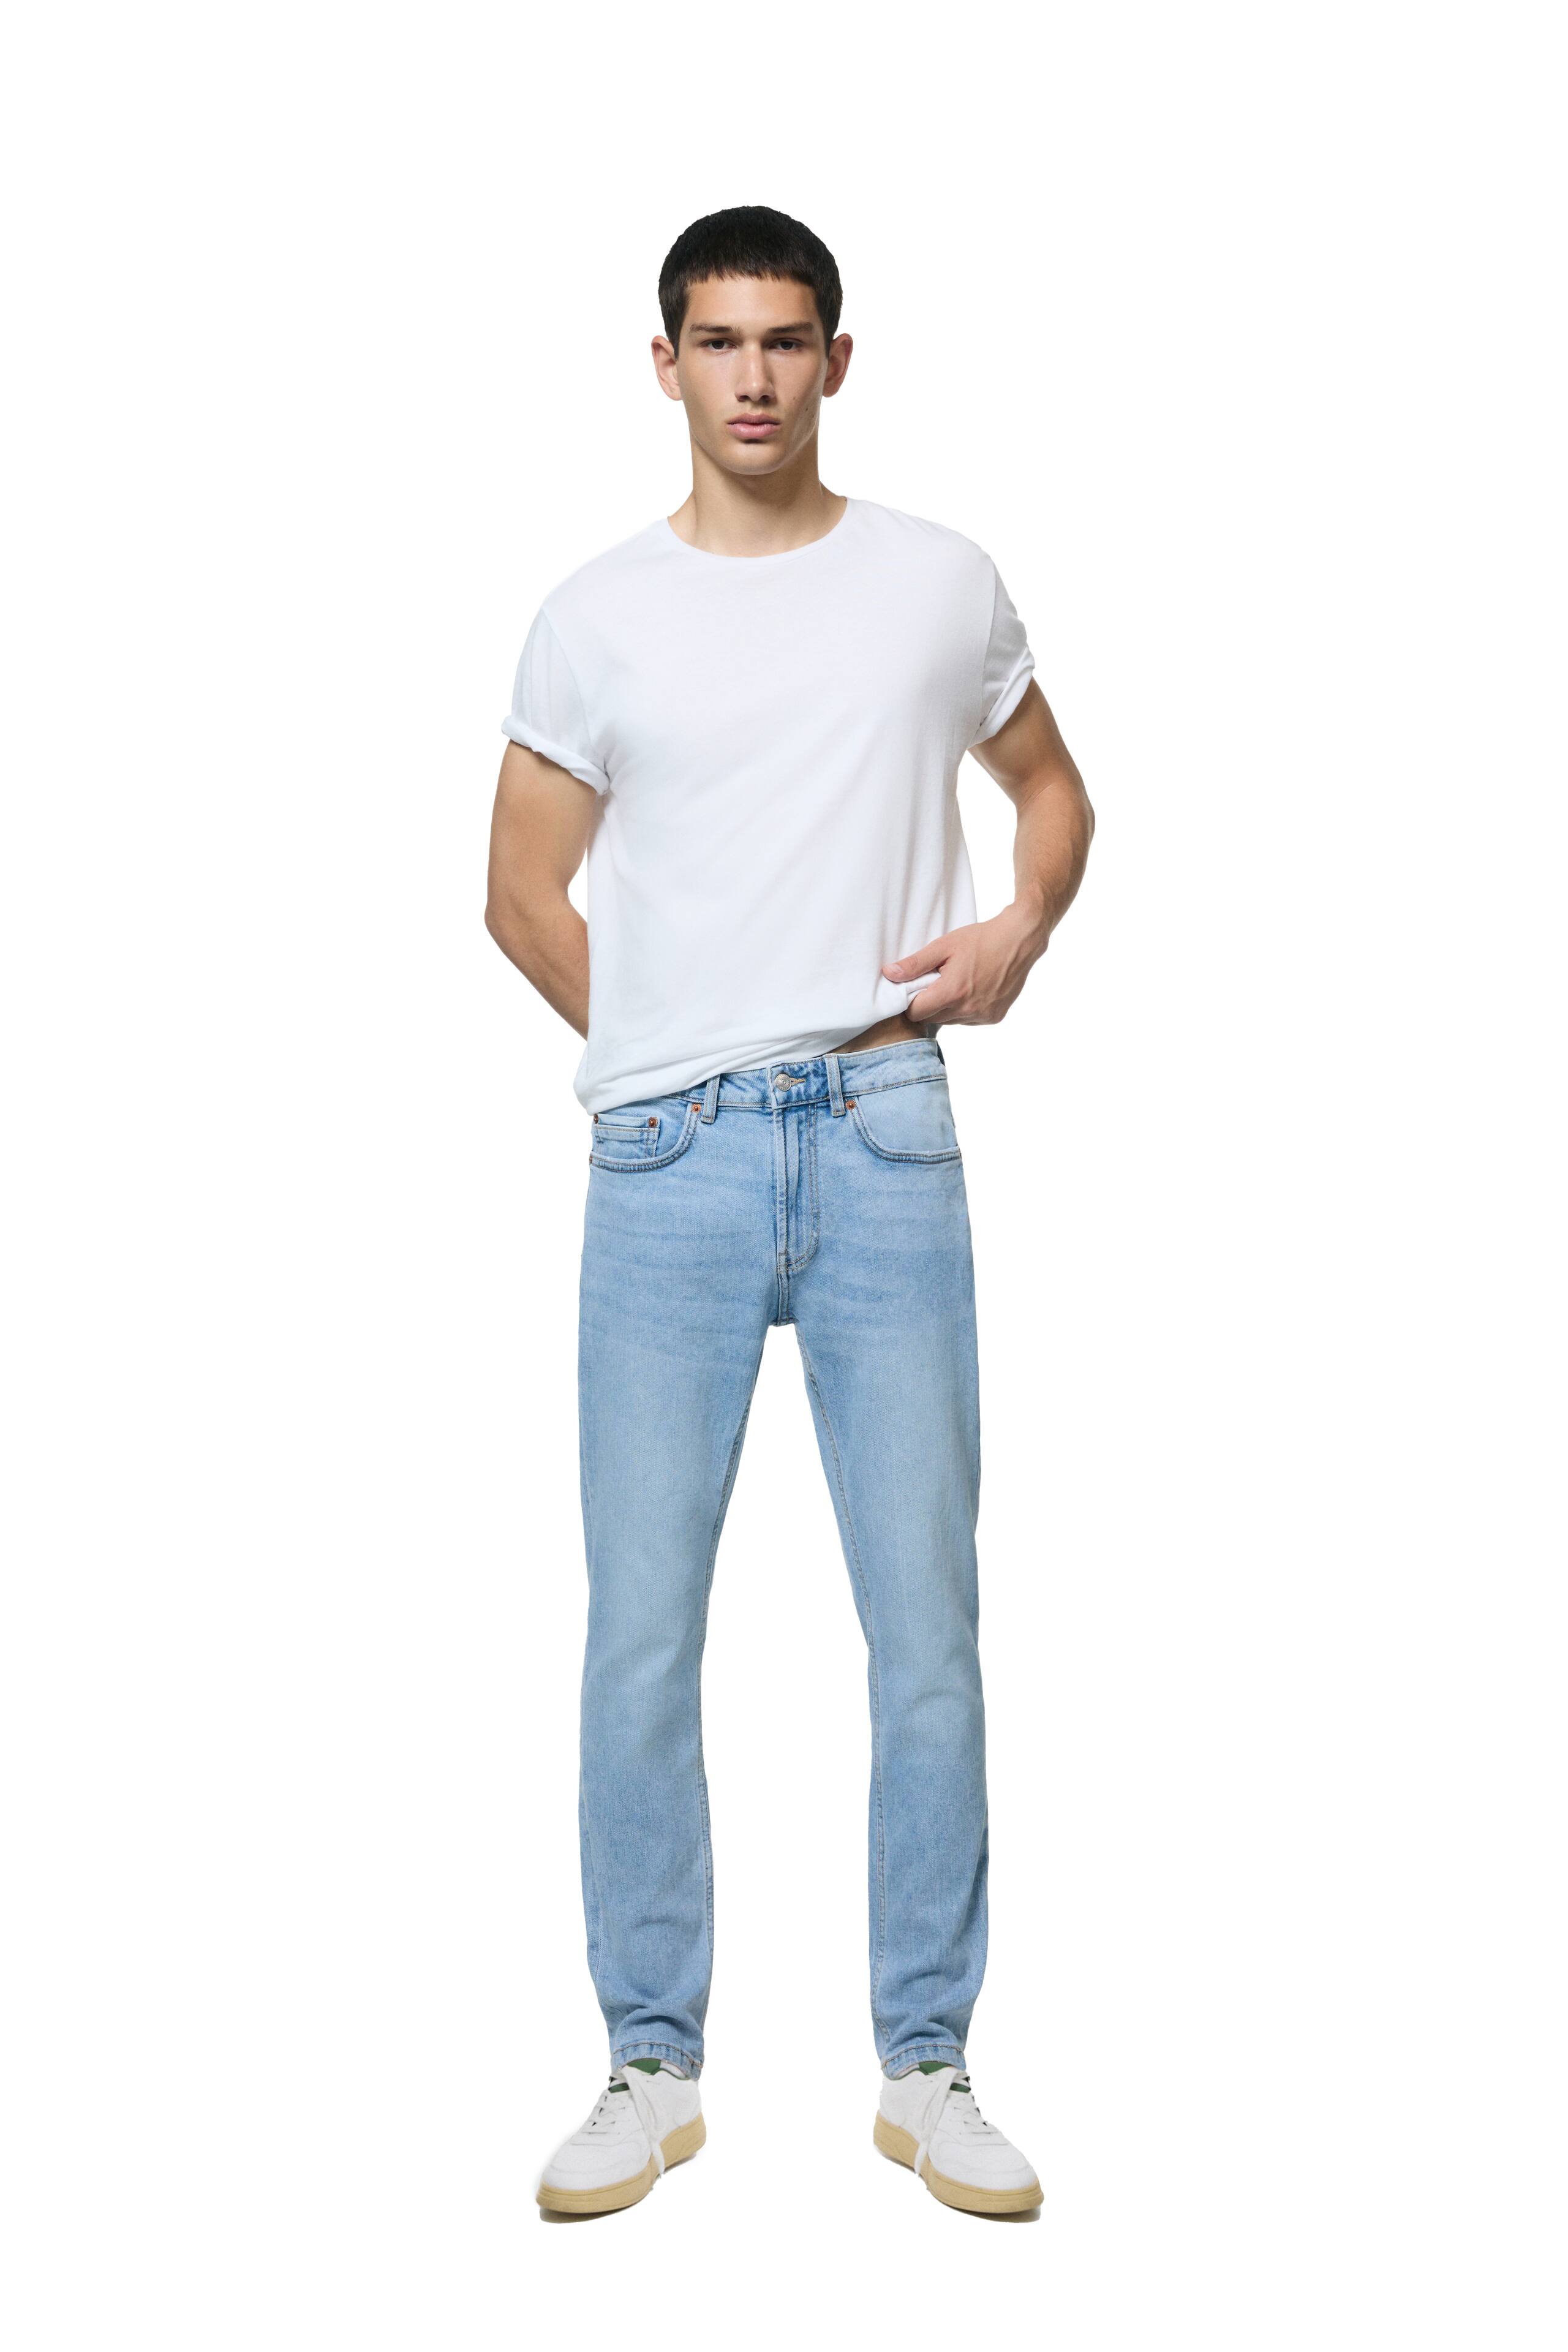 Jeans super skinny Non Stop lavado claro corte cintura para mujer